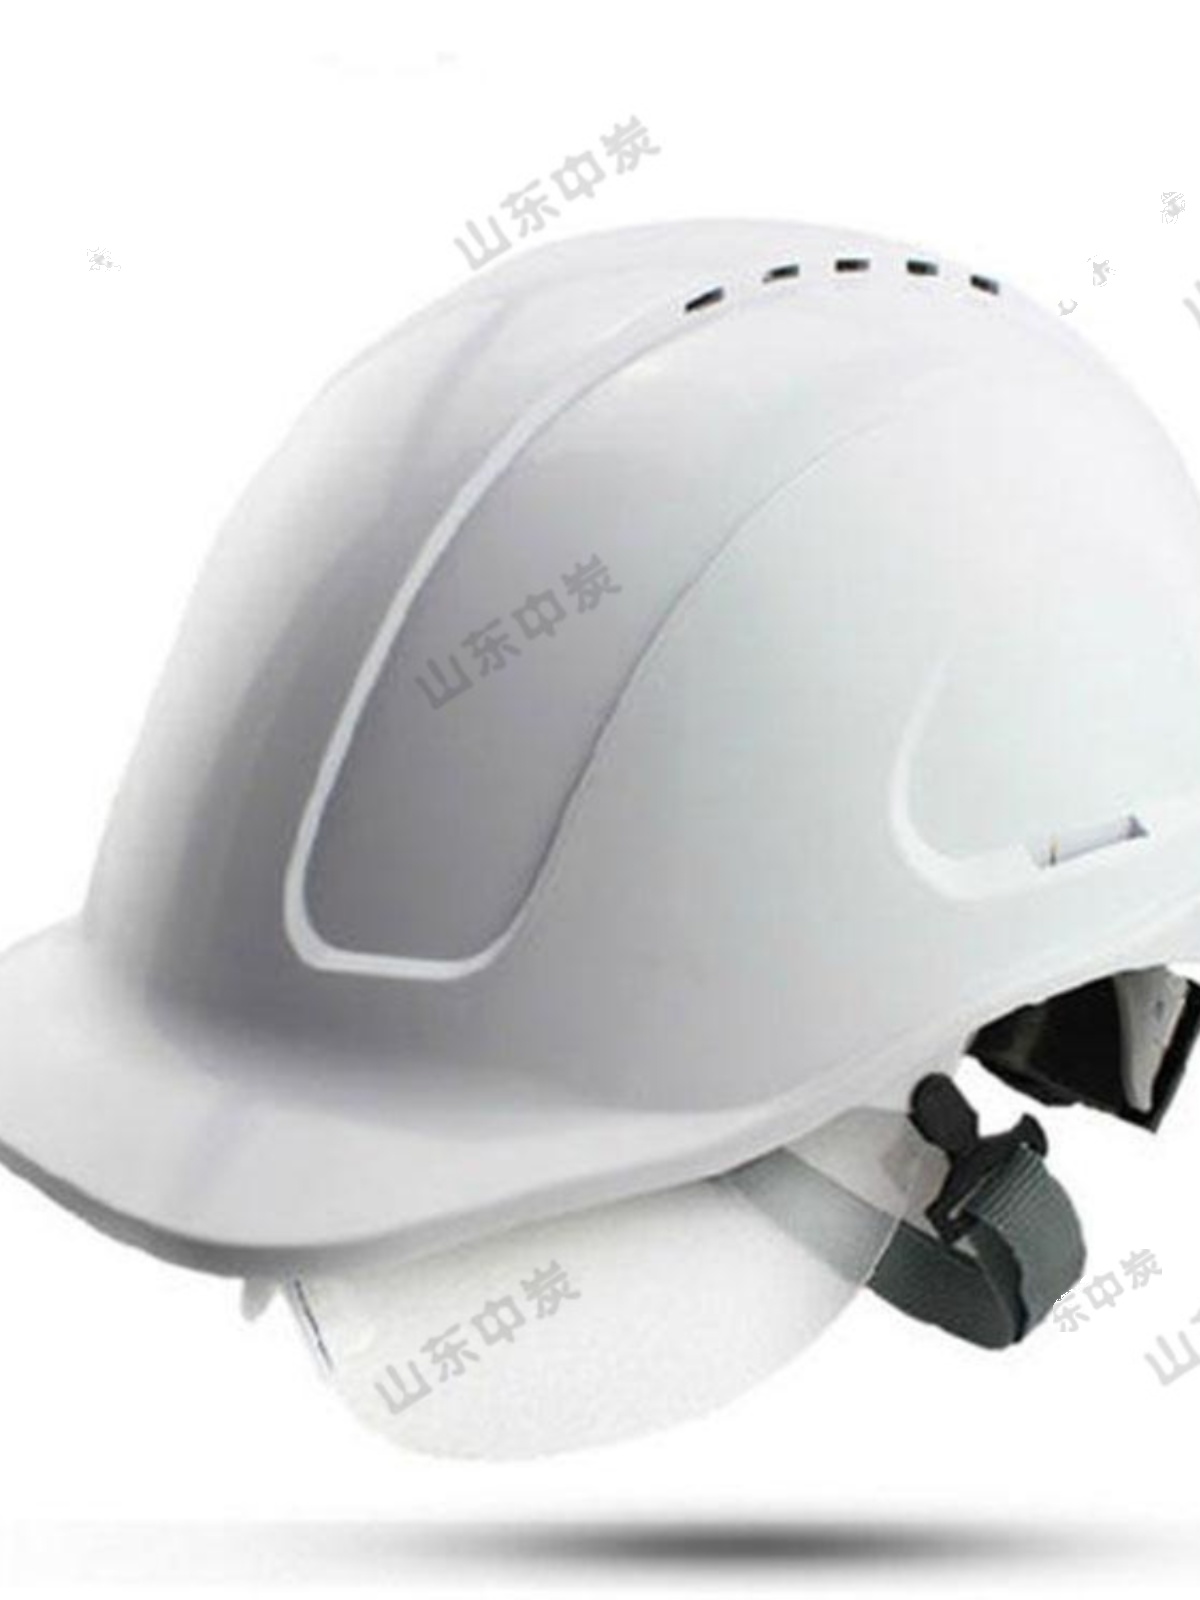 厂多种颜色可选矿用安全帽 煤矿绝缘安全帽 矿用智能定位安全帽促